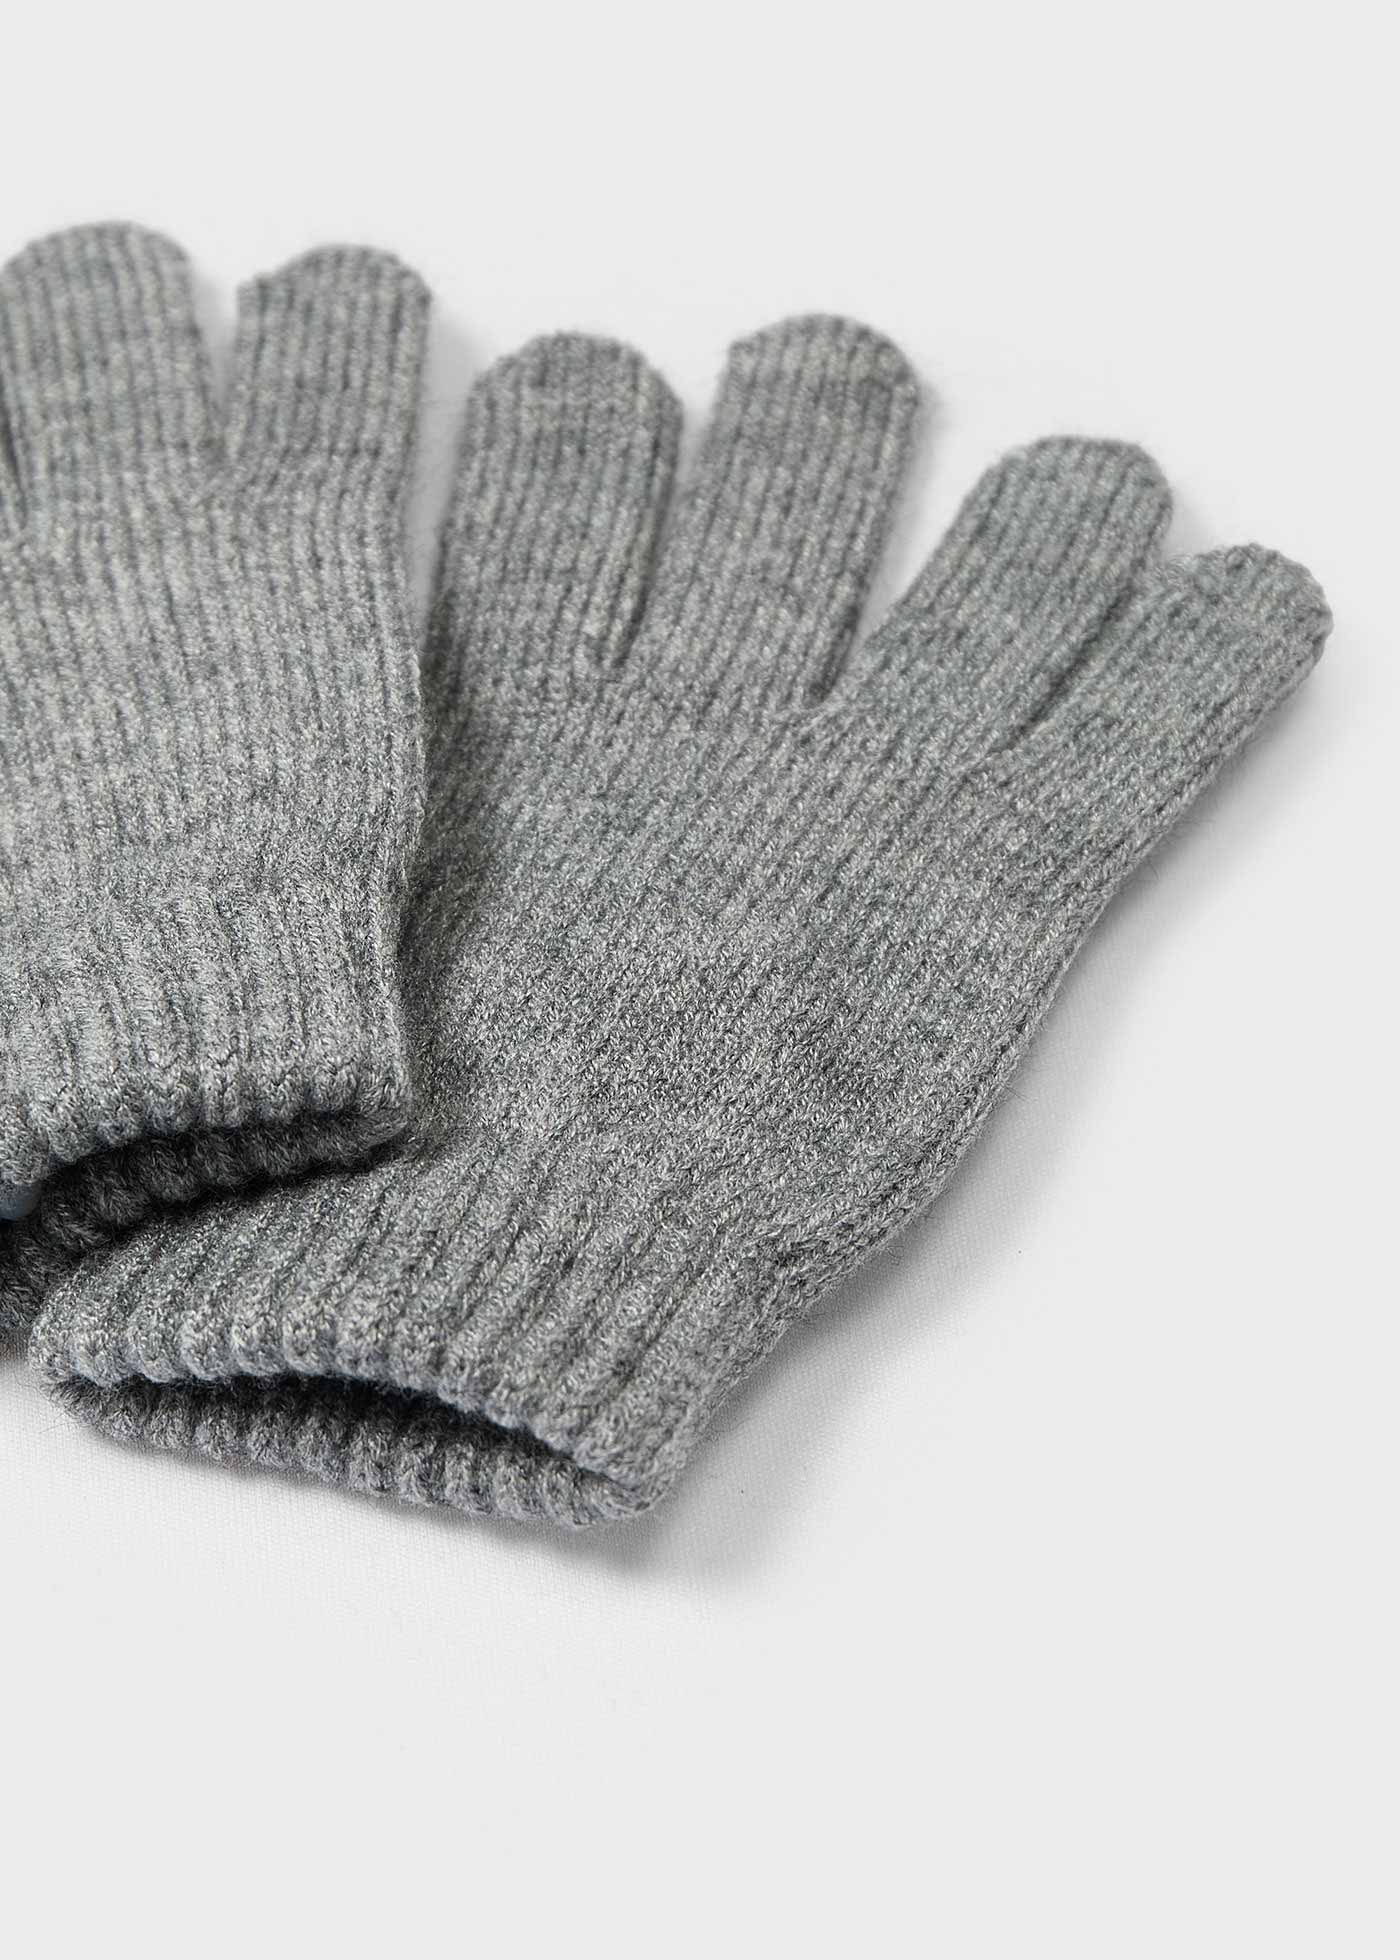 Boy Gloves